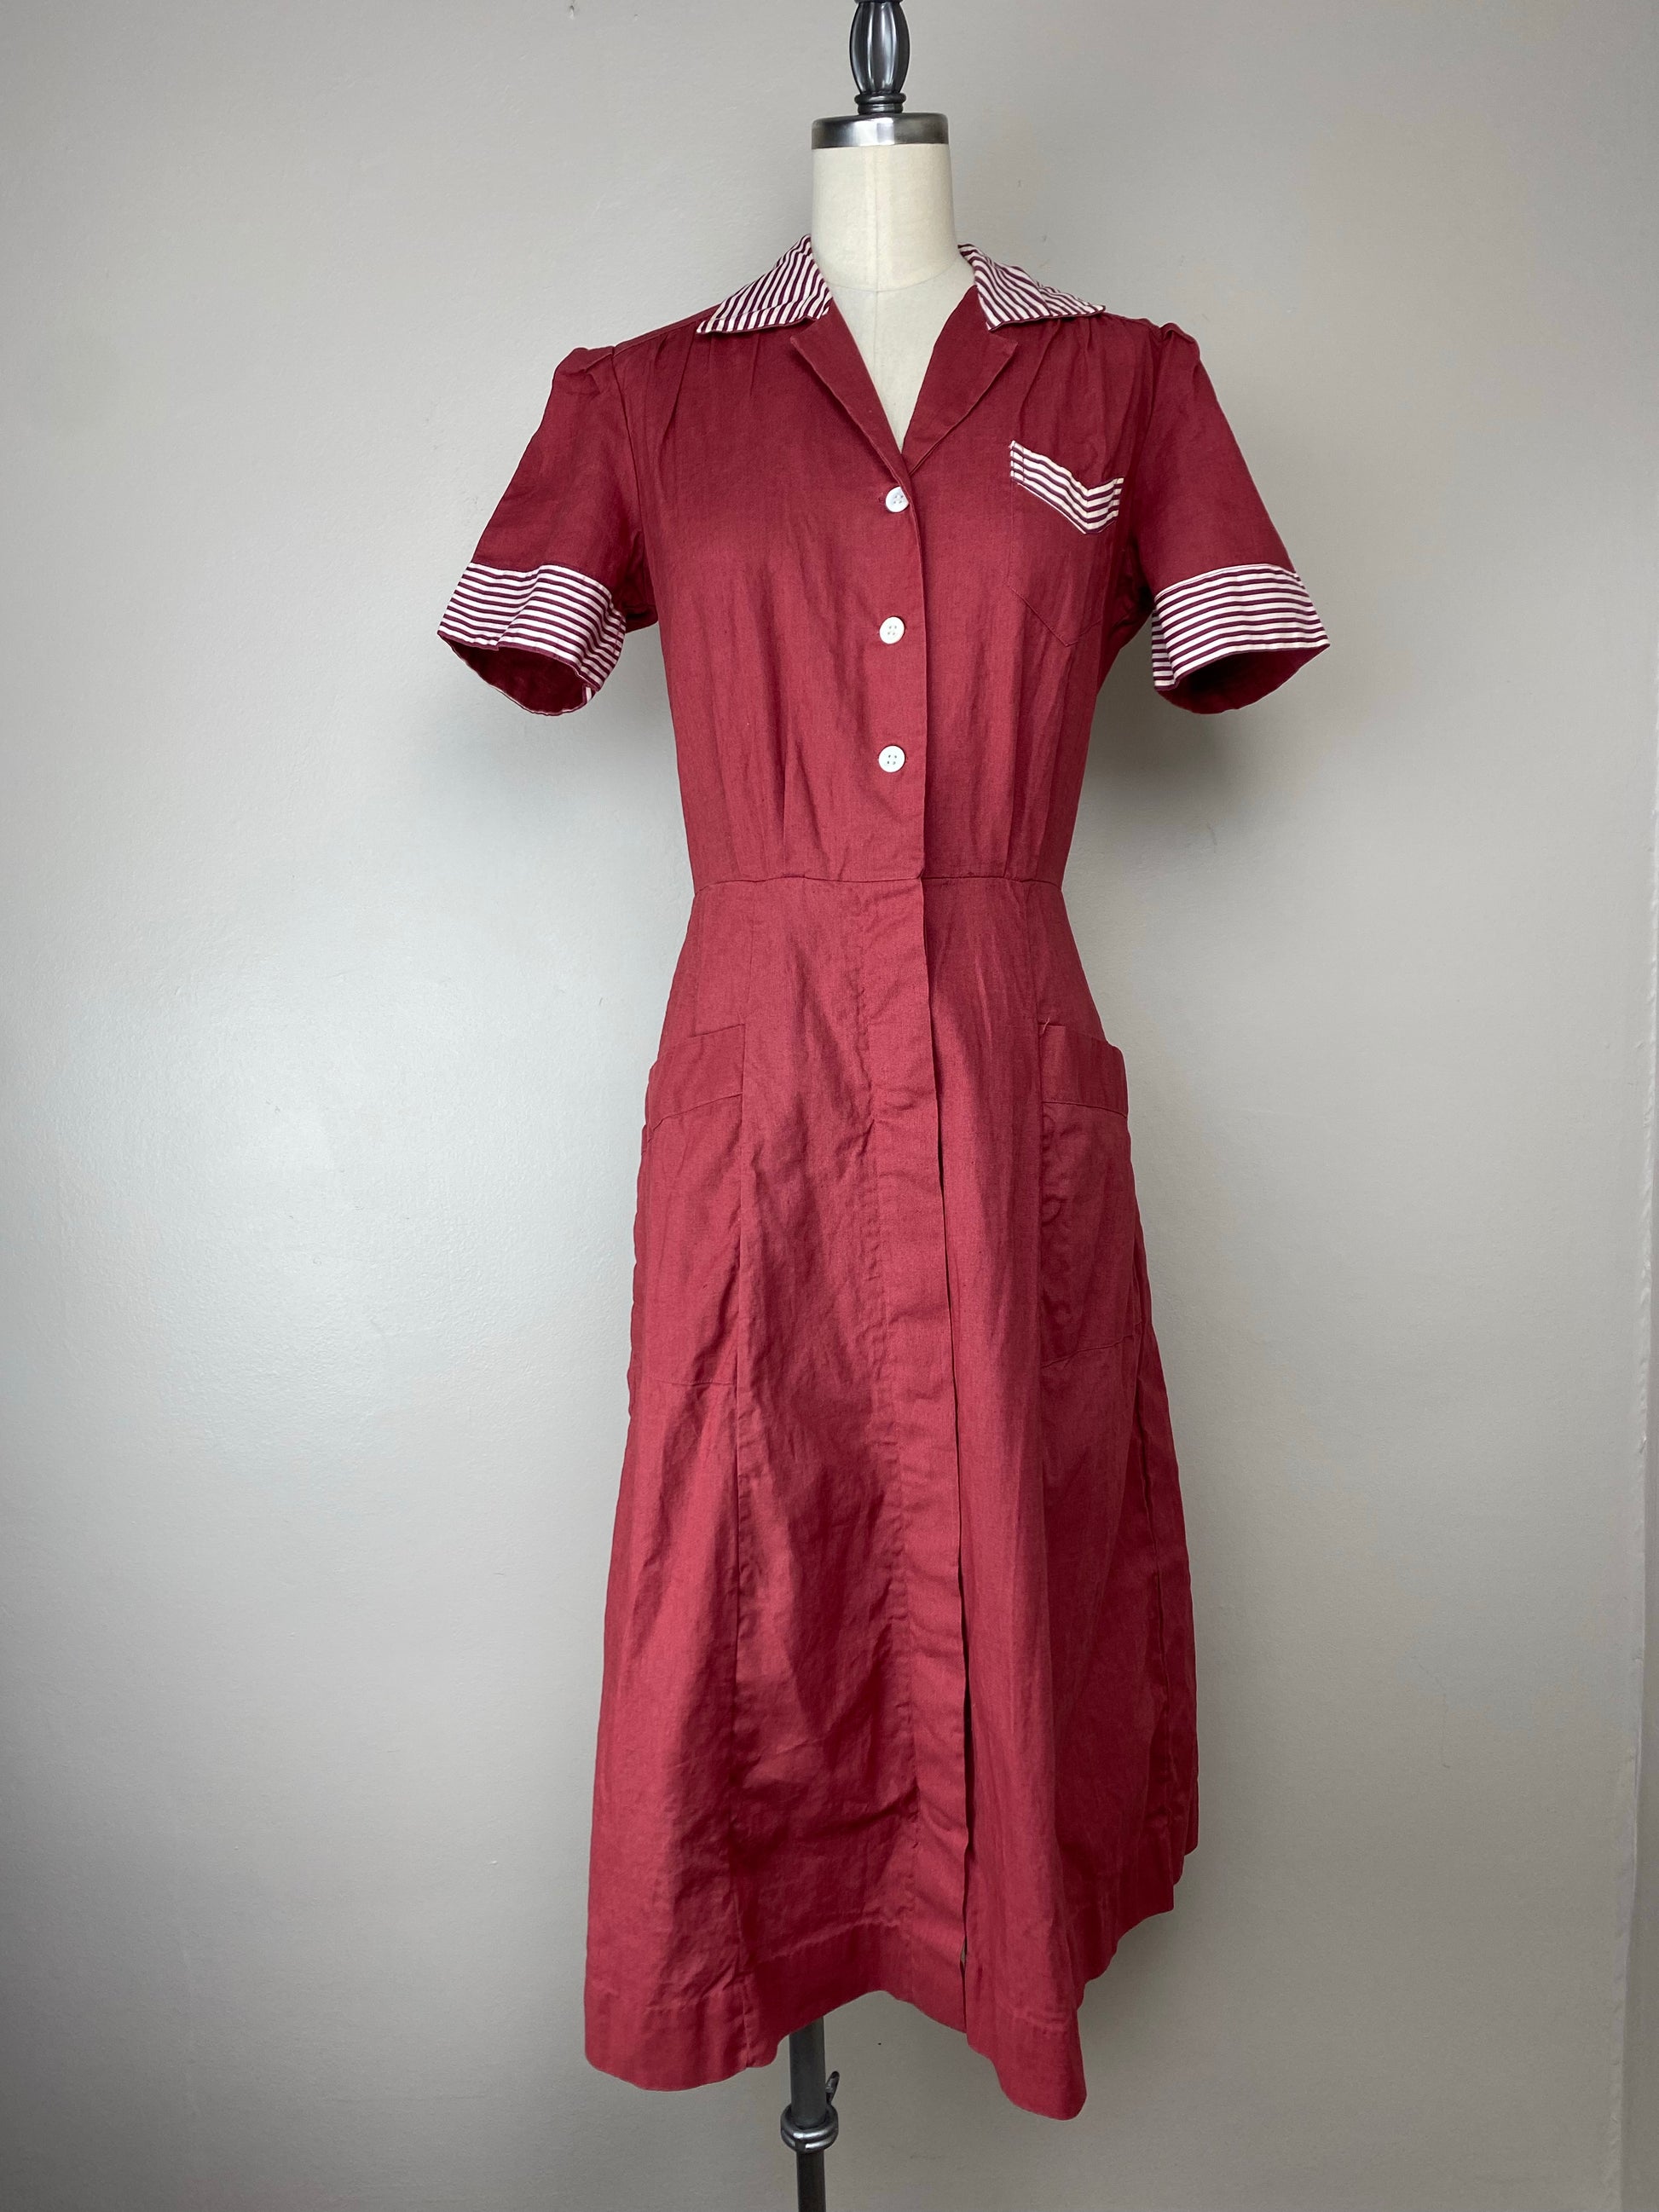 Waitress Uniforms, 1930s